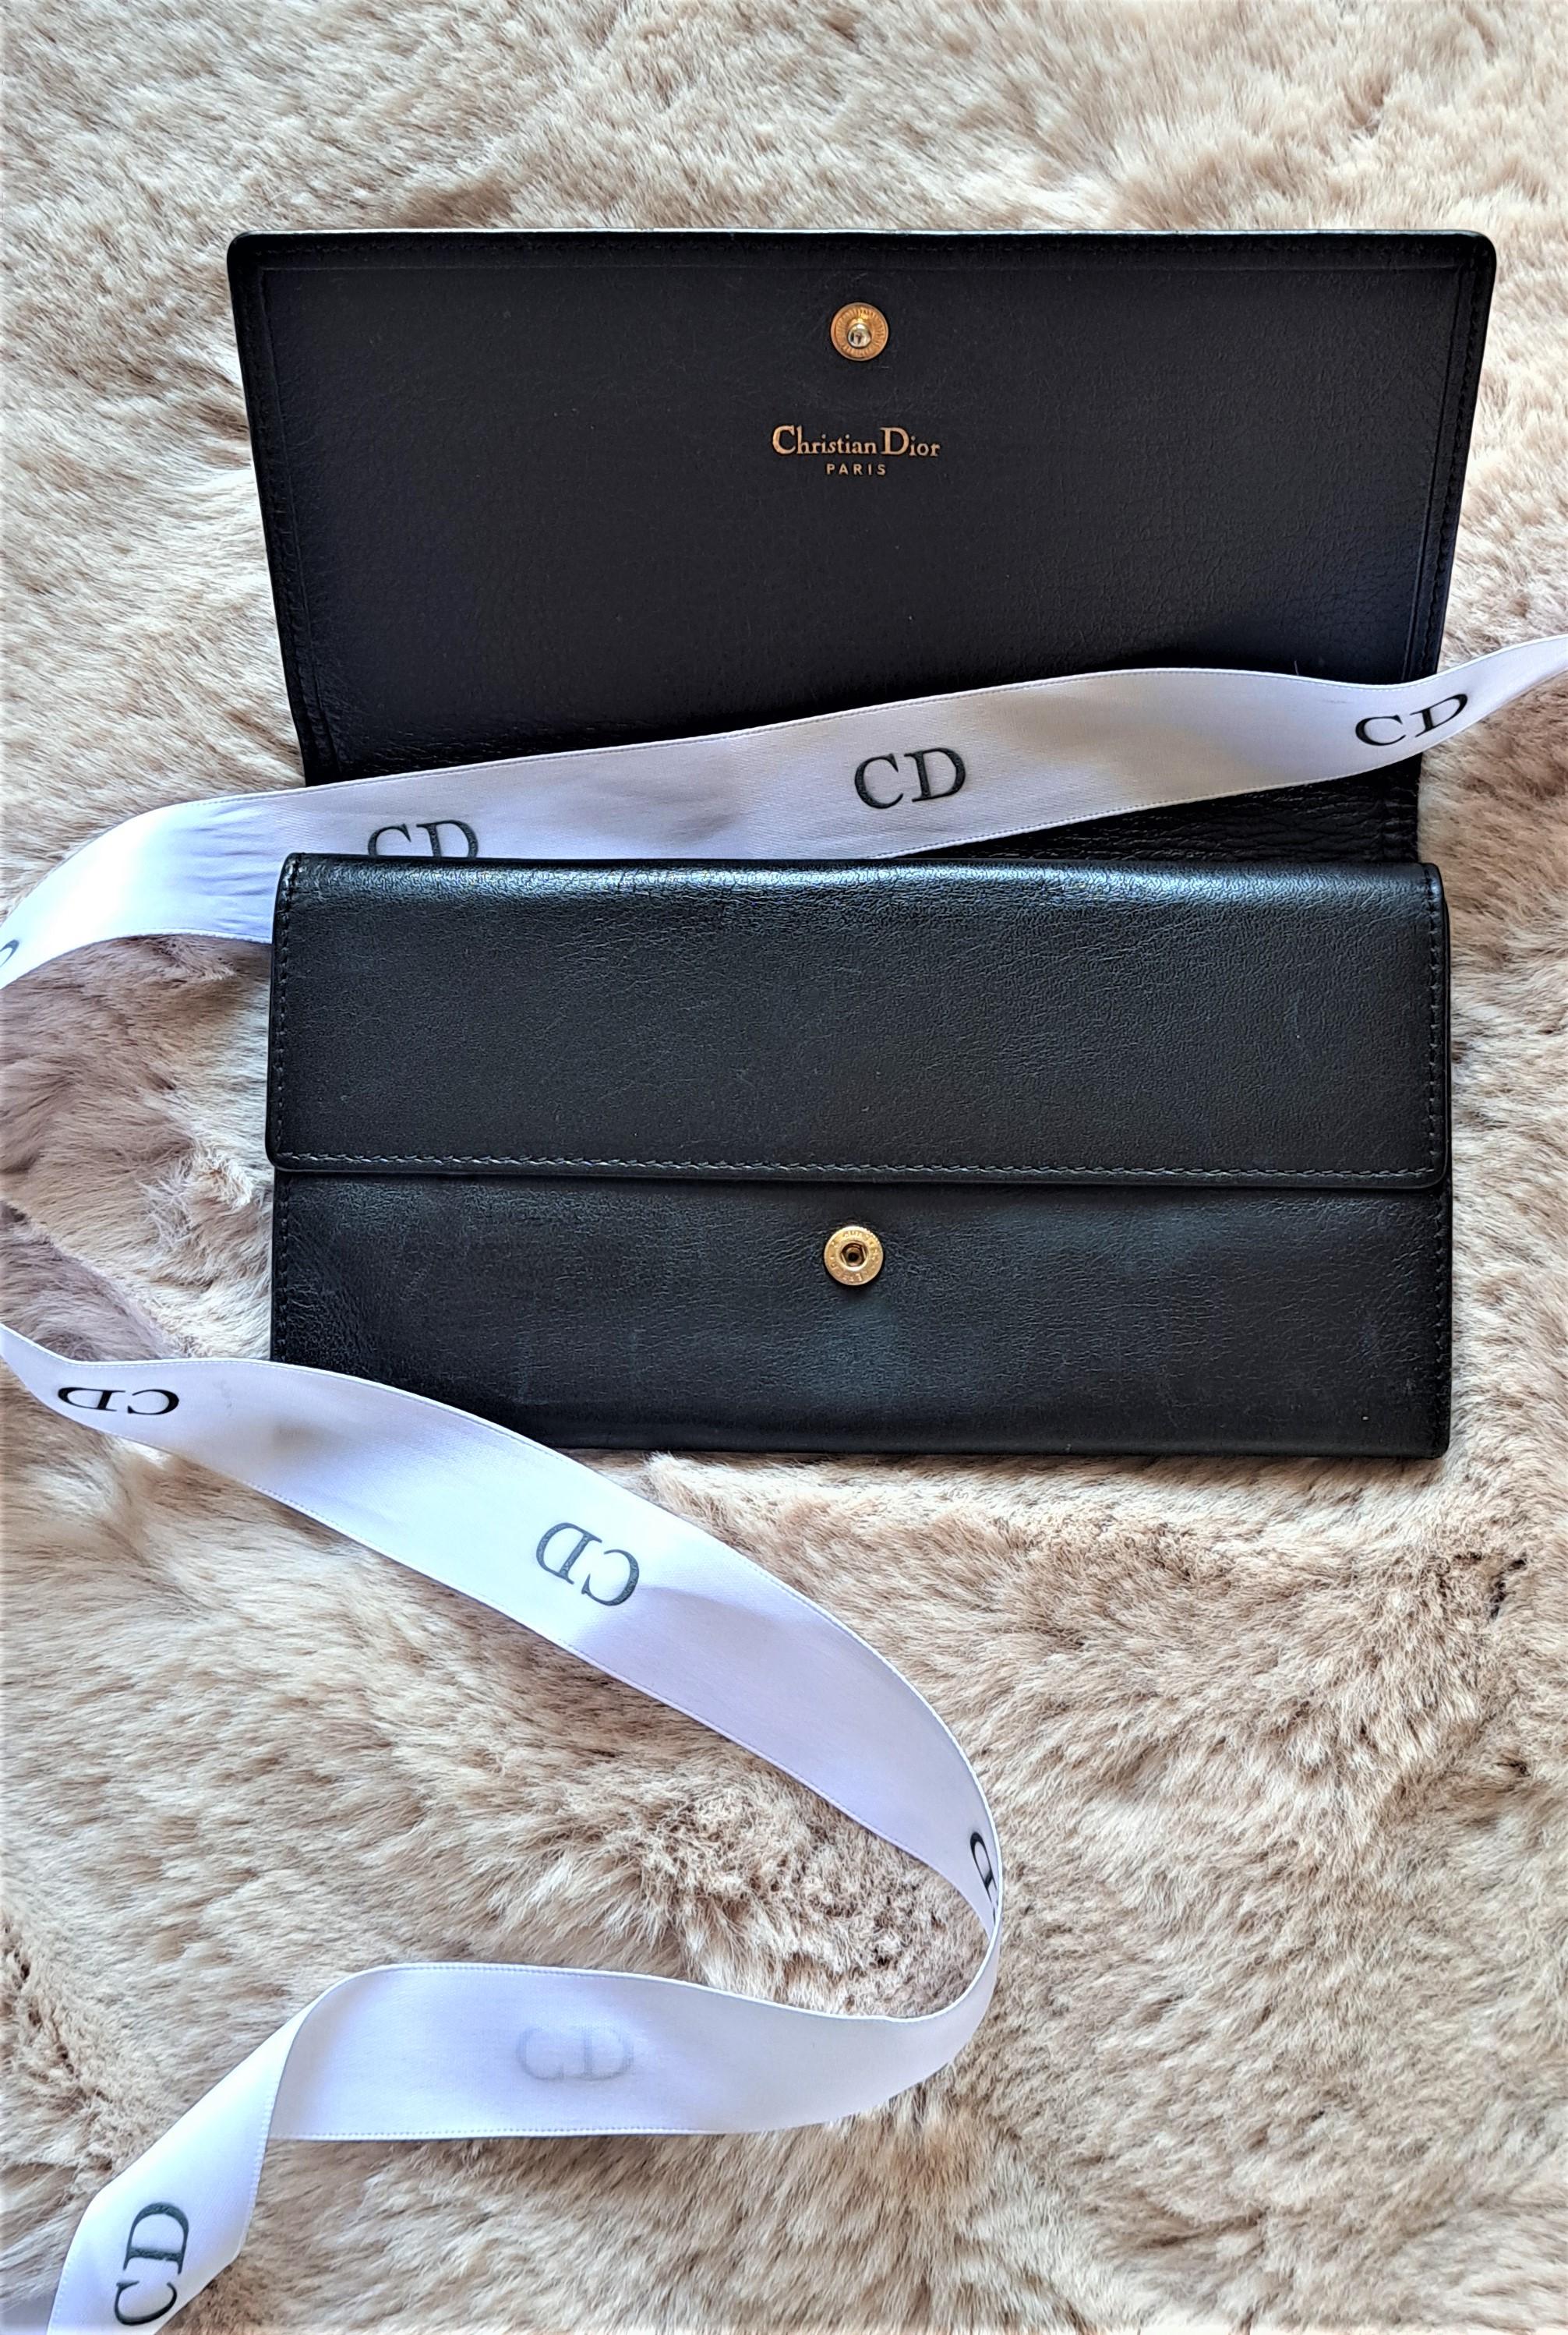 Dieses wunderschöne schwarze Portemonnaie aus Kalbsleder von Christian Dior aus den 1990er Jahren mit goldenem Charme-Logo ist ein klassisches und ikonisches Accessoire. 

In den 1990er Jahren erlebte Dior einen erneuten Popularitätsschub, und die